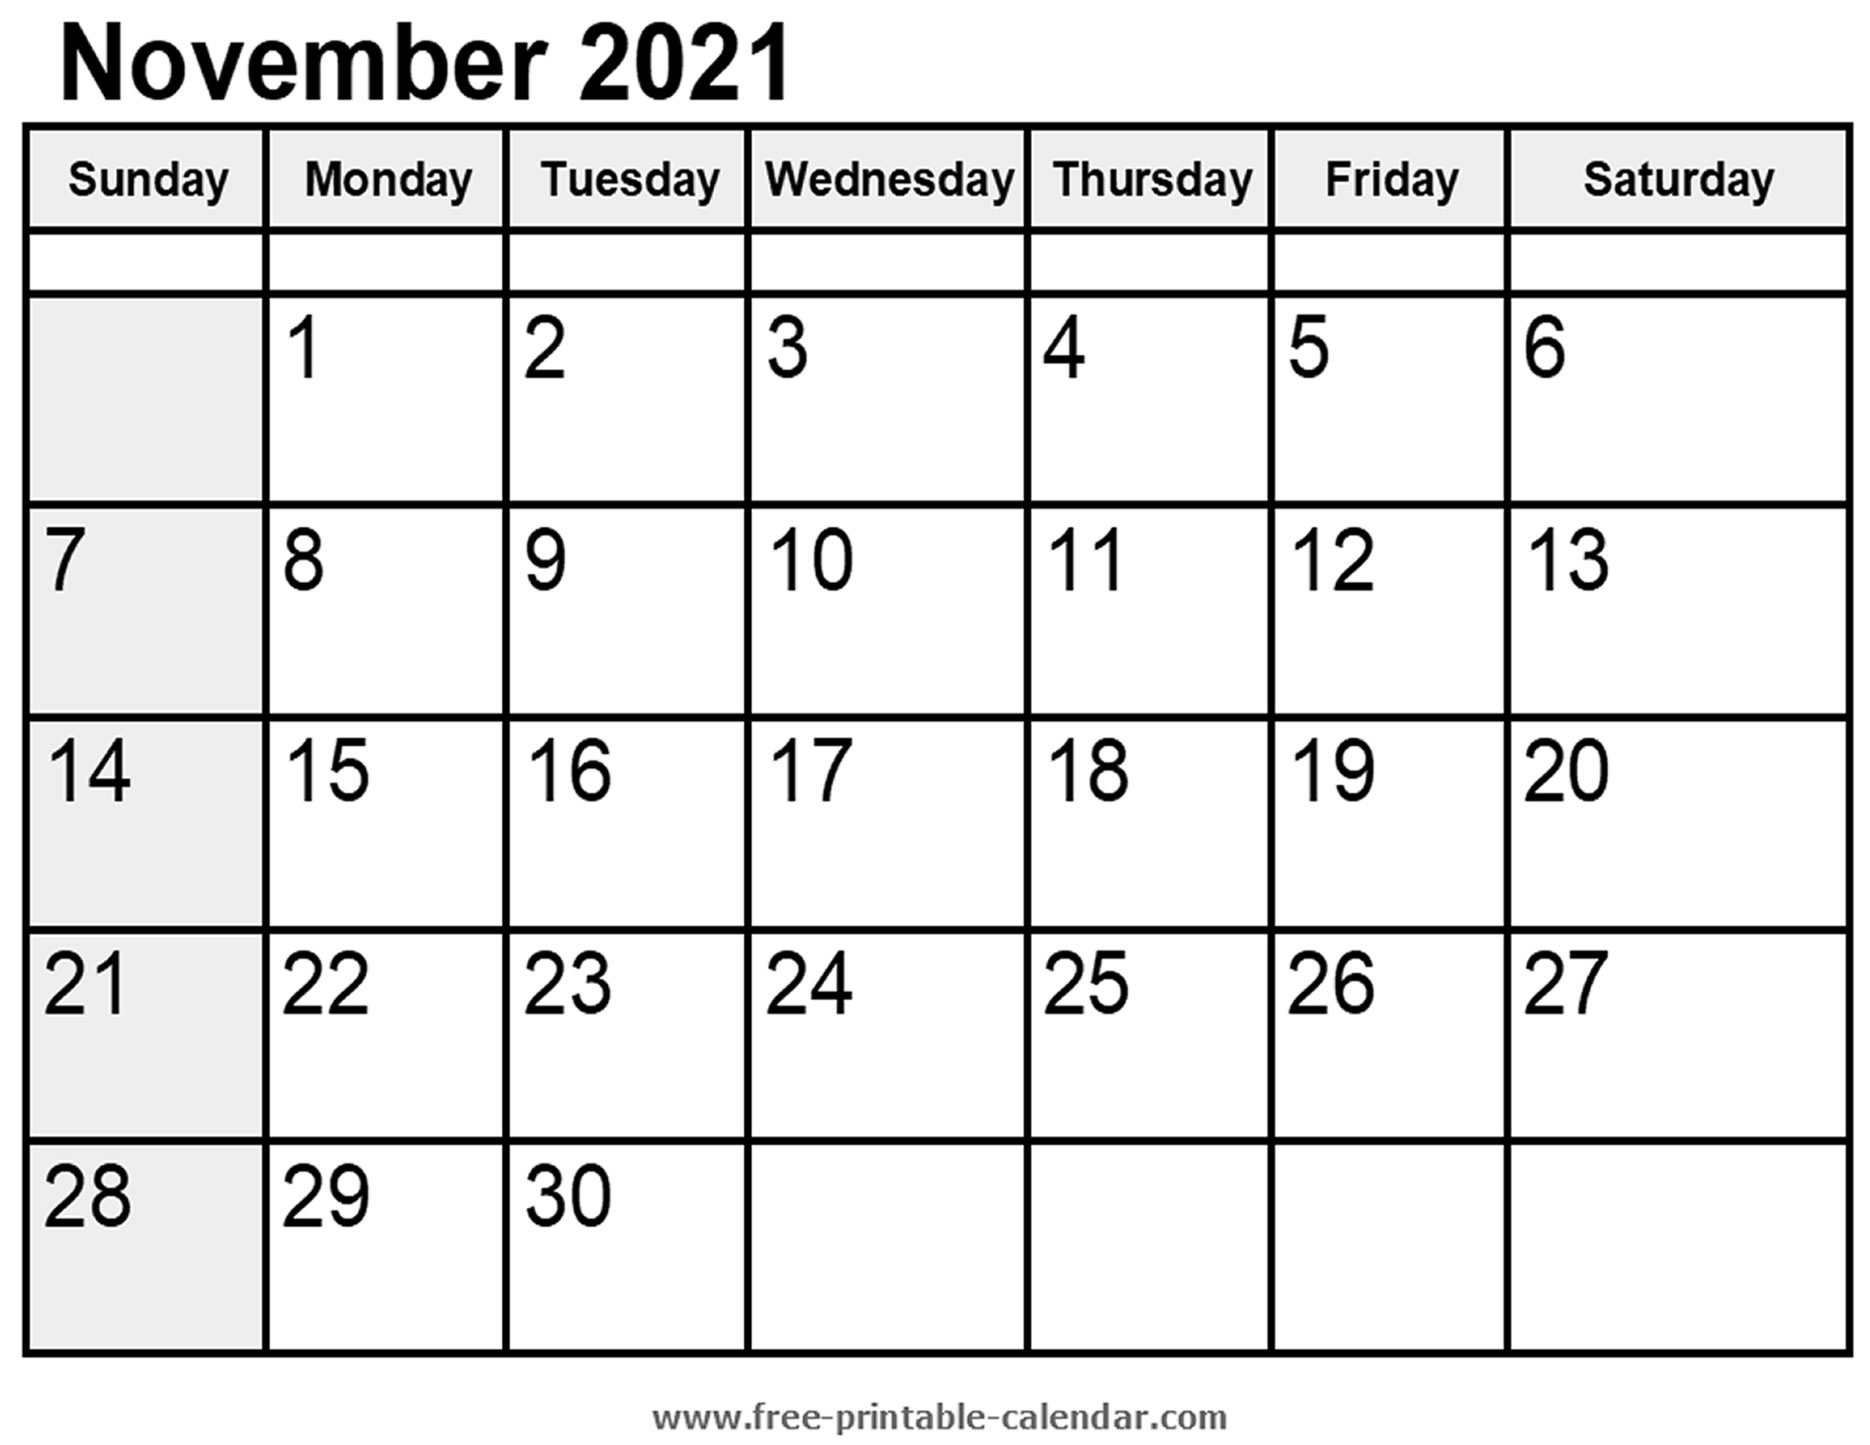 November 2021 Calendar Printable | Free Letter Templates Free Printable November 2021 Calendar